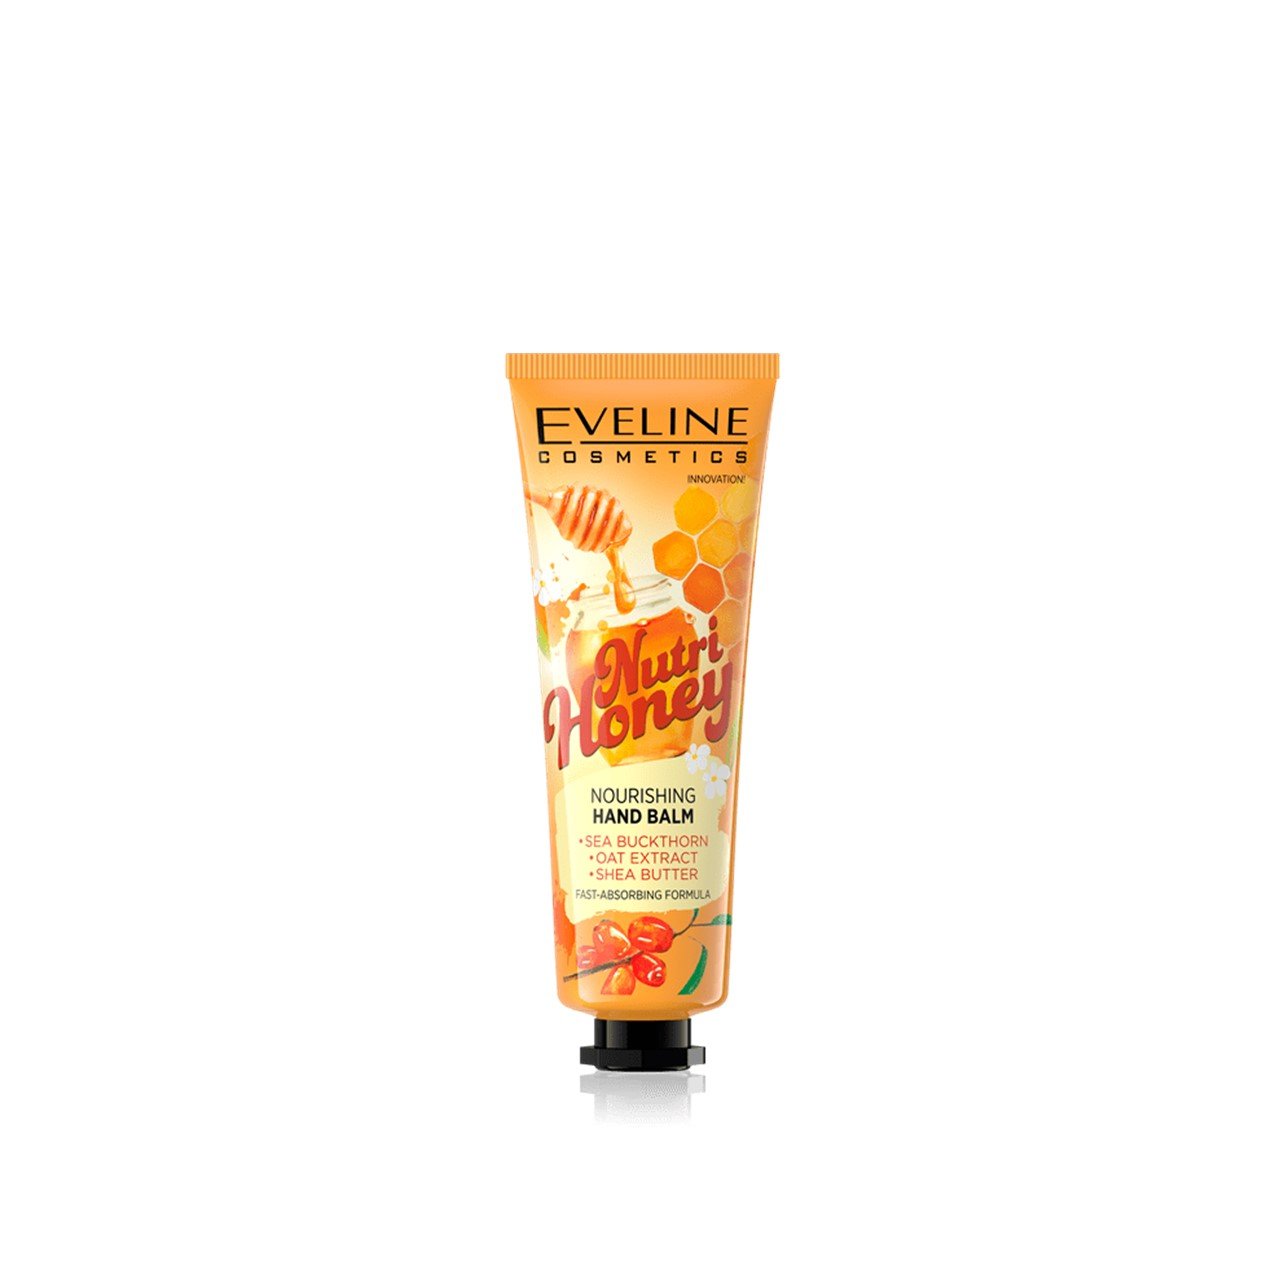 Eveline Cosmetics Nutri Honey Nourishing Hand Balm 50ml